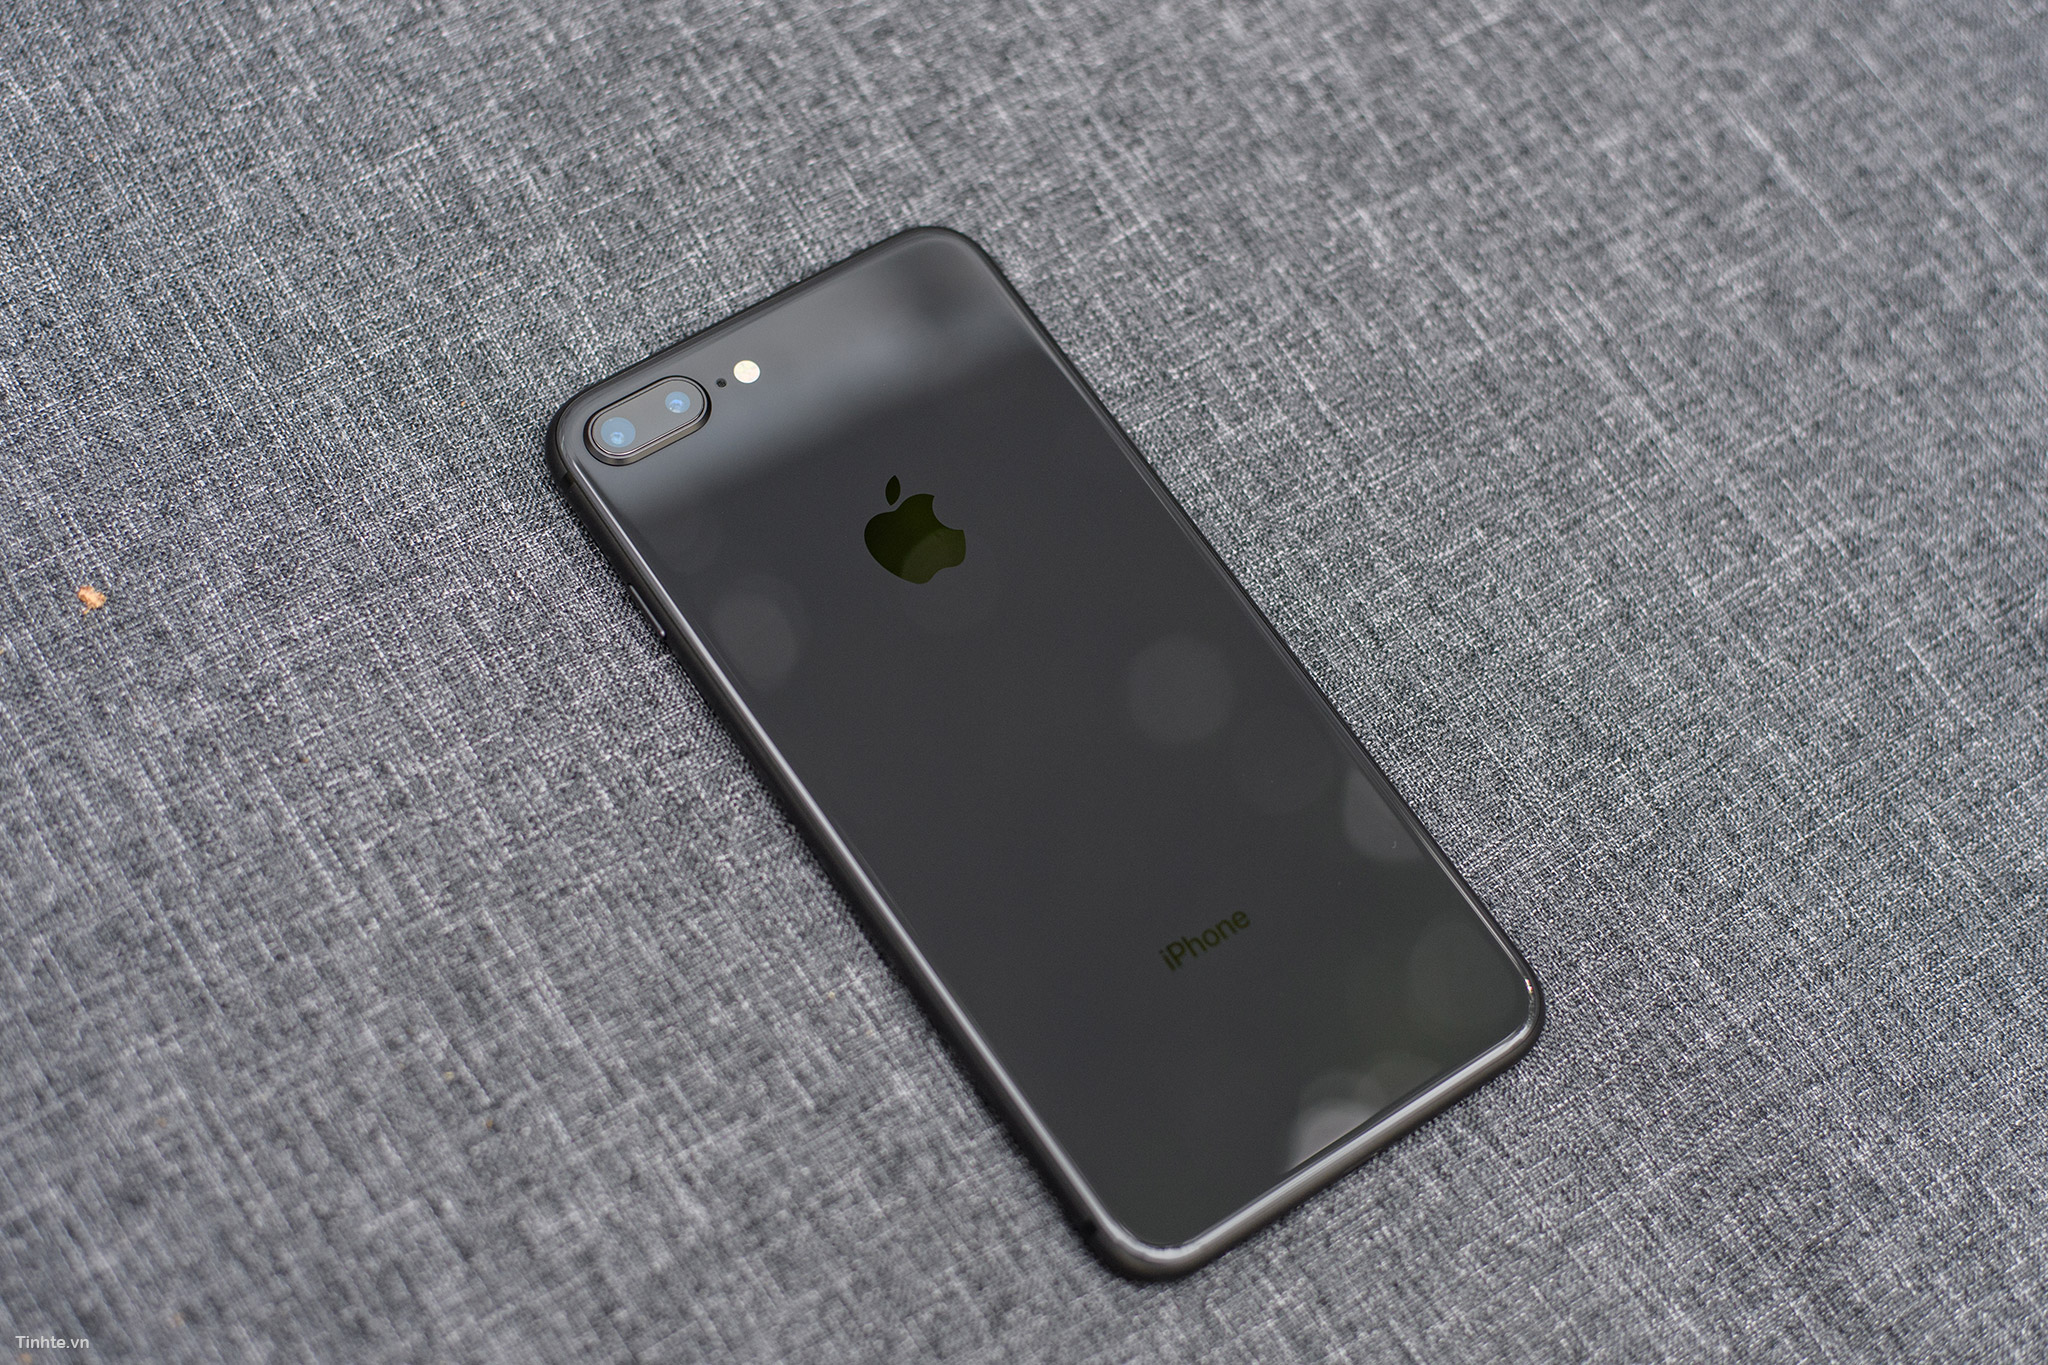 iPhone 8 Space Gray với sắc đen đầy quyến rũ làm cho chiếc điện thoại này trở nên đặc biệt hơn bao giờ hết. Với khả năng chụp ảnh đỉnh cao, hiệu suất cao và thiết kế tinh tế, iPhone 8 Space Gray xứng đáng là một thiết bị đáng để chiêm ngưỡng. Hãy xem qua hình ảnh chi tiết của sản phẩm để hiểu thêm về tính năng và thiết kế hoàn hảo của nó.